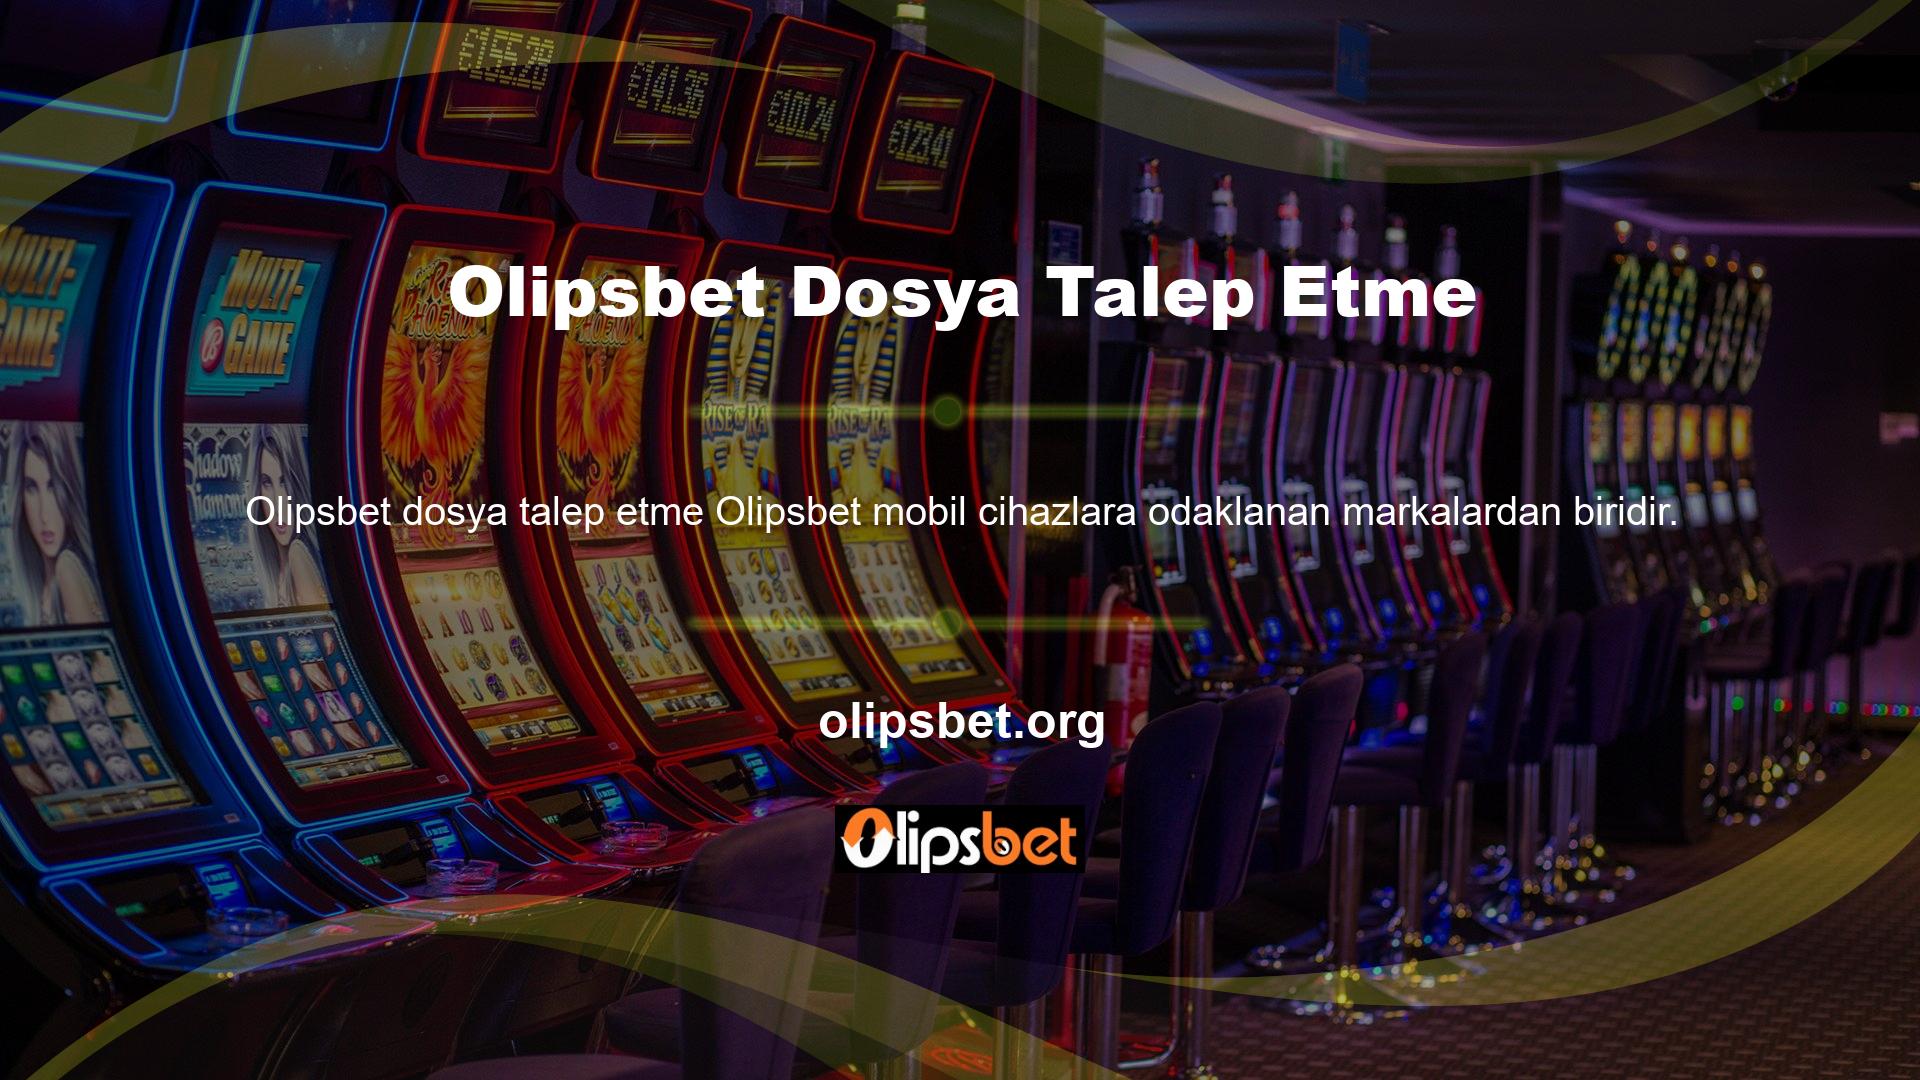 Sitede her türlü bahis ve casino oyunu İngilizce ve Türkçe olarak sunulmaktadır